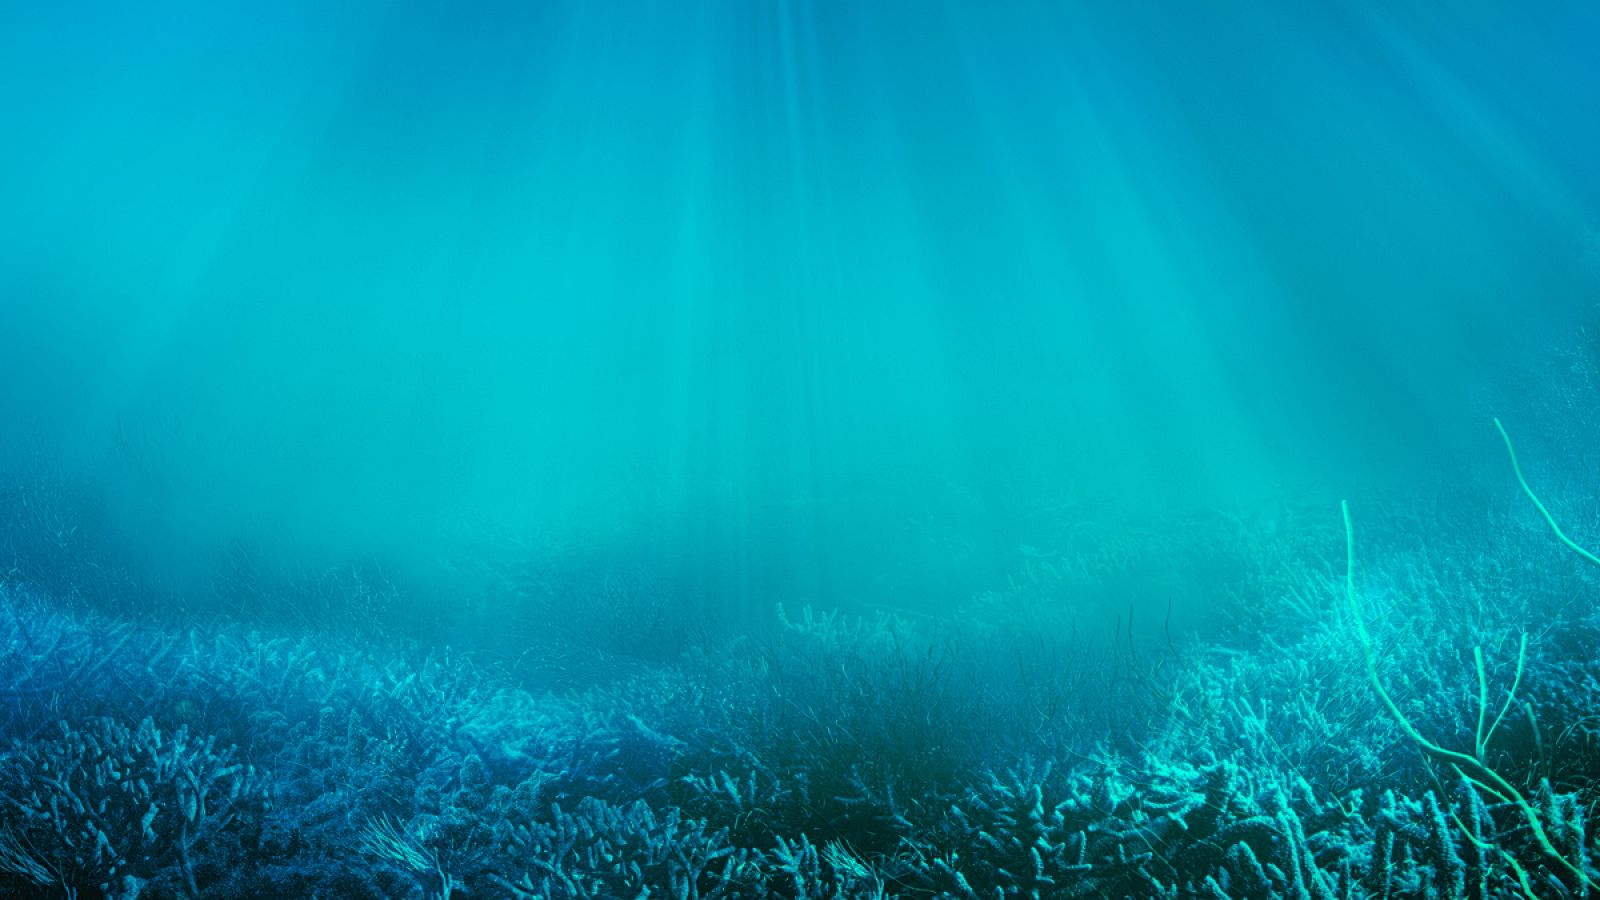 Los expertos recuerdan que "los océanos no son una fuente inagotable de recursos y servicios".